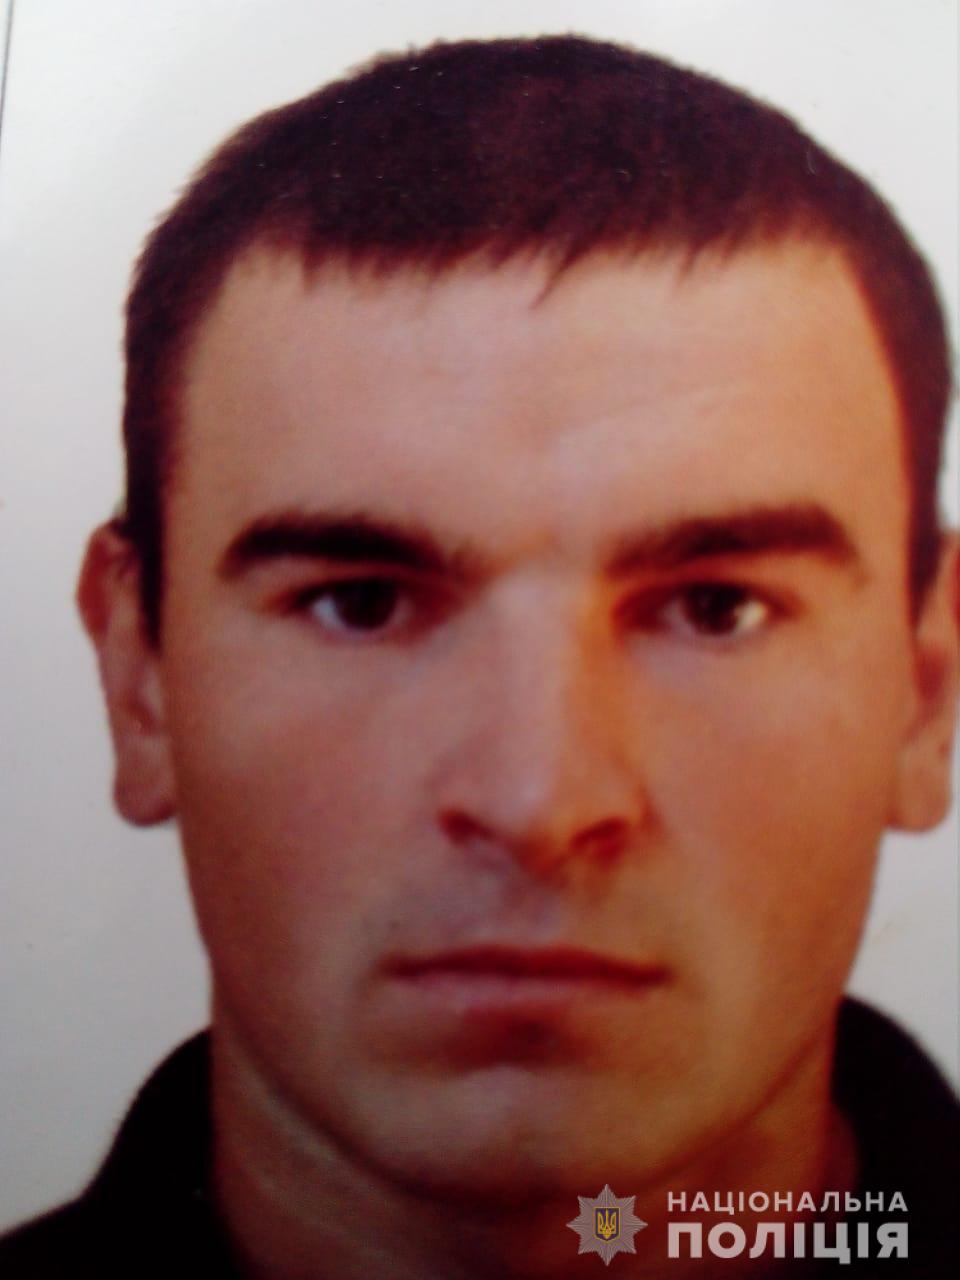 Іршавським відділенням поліції розшукується Керечанин Василь Васильович,  який 26 квітня  2019 року близько 05.00 години пішов з дому у невідомому напрямку.